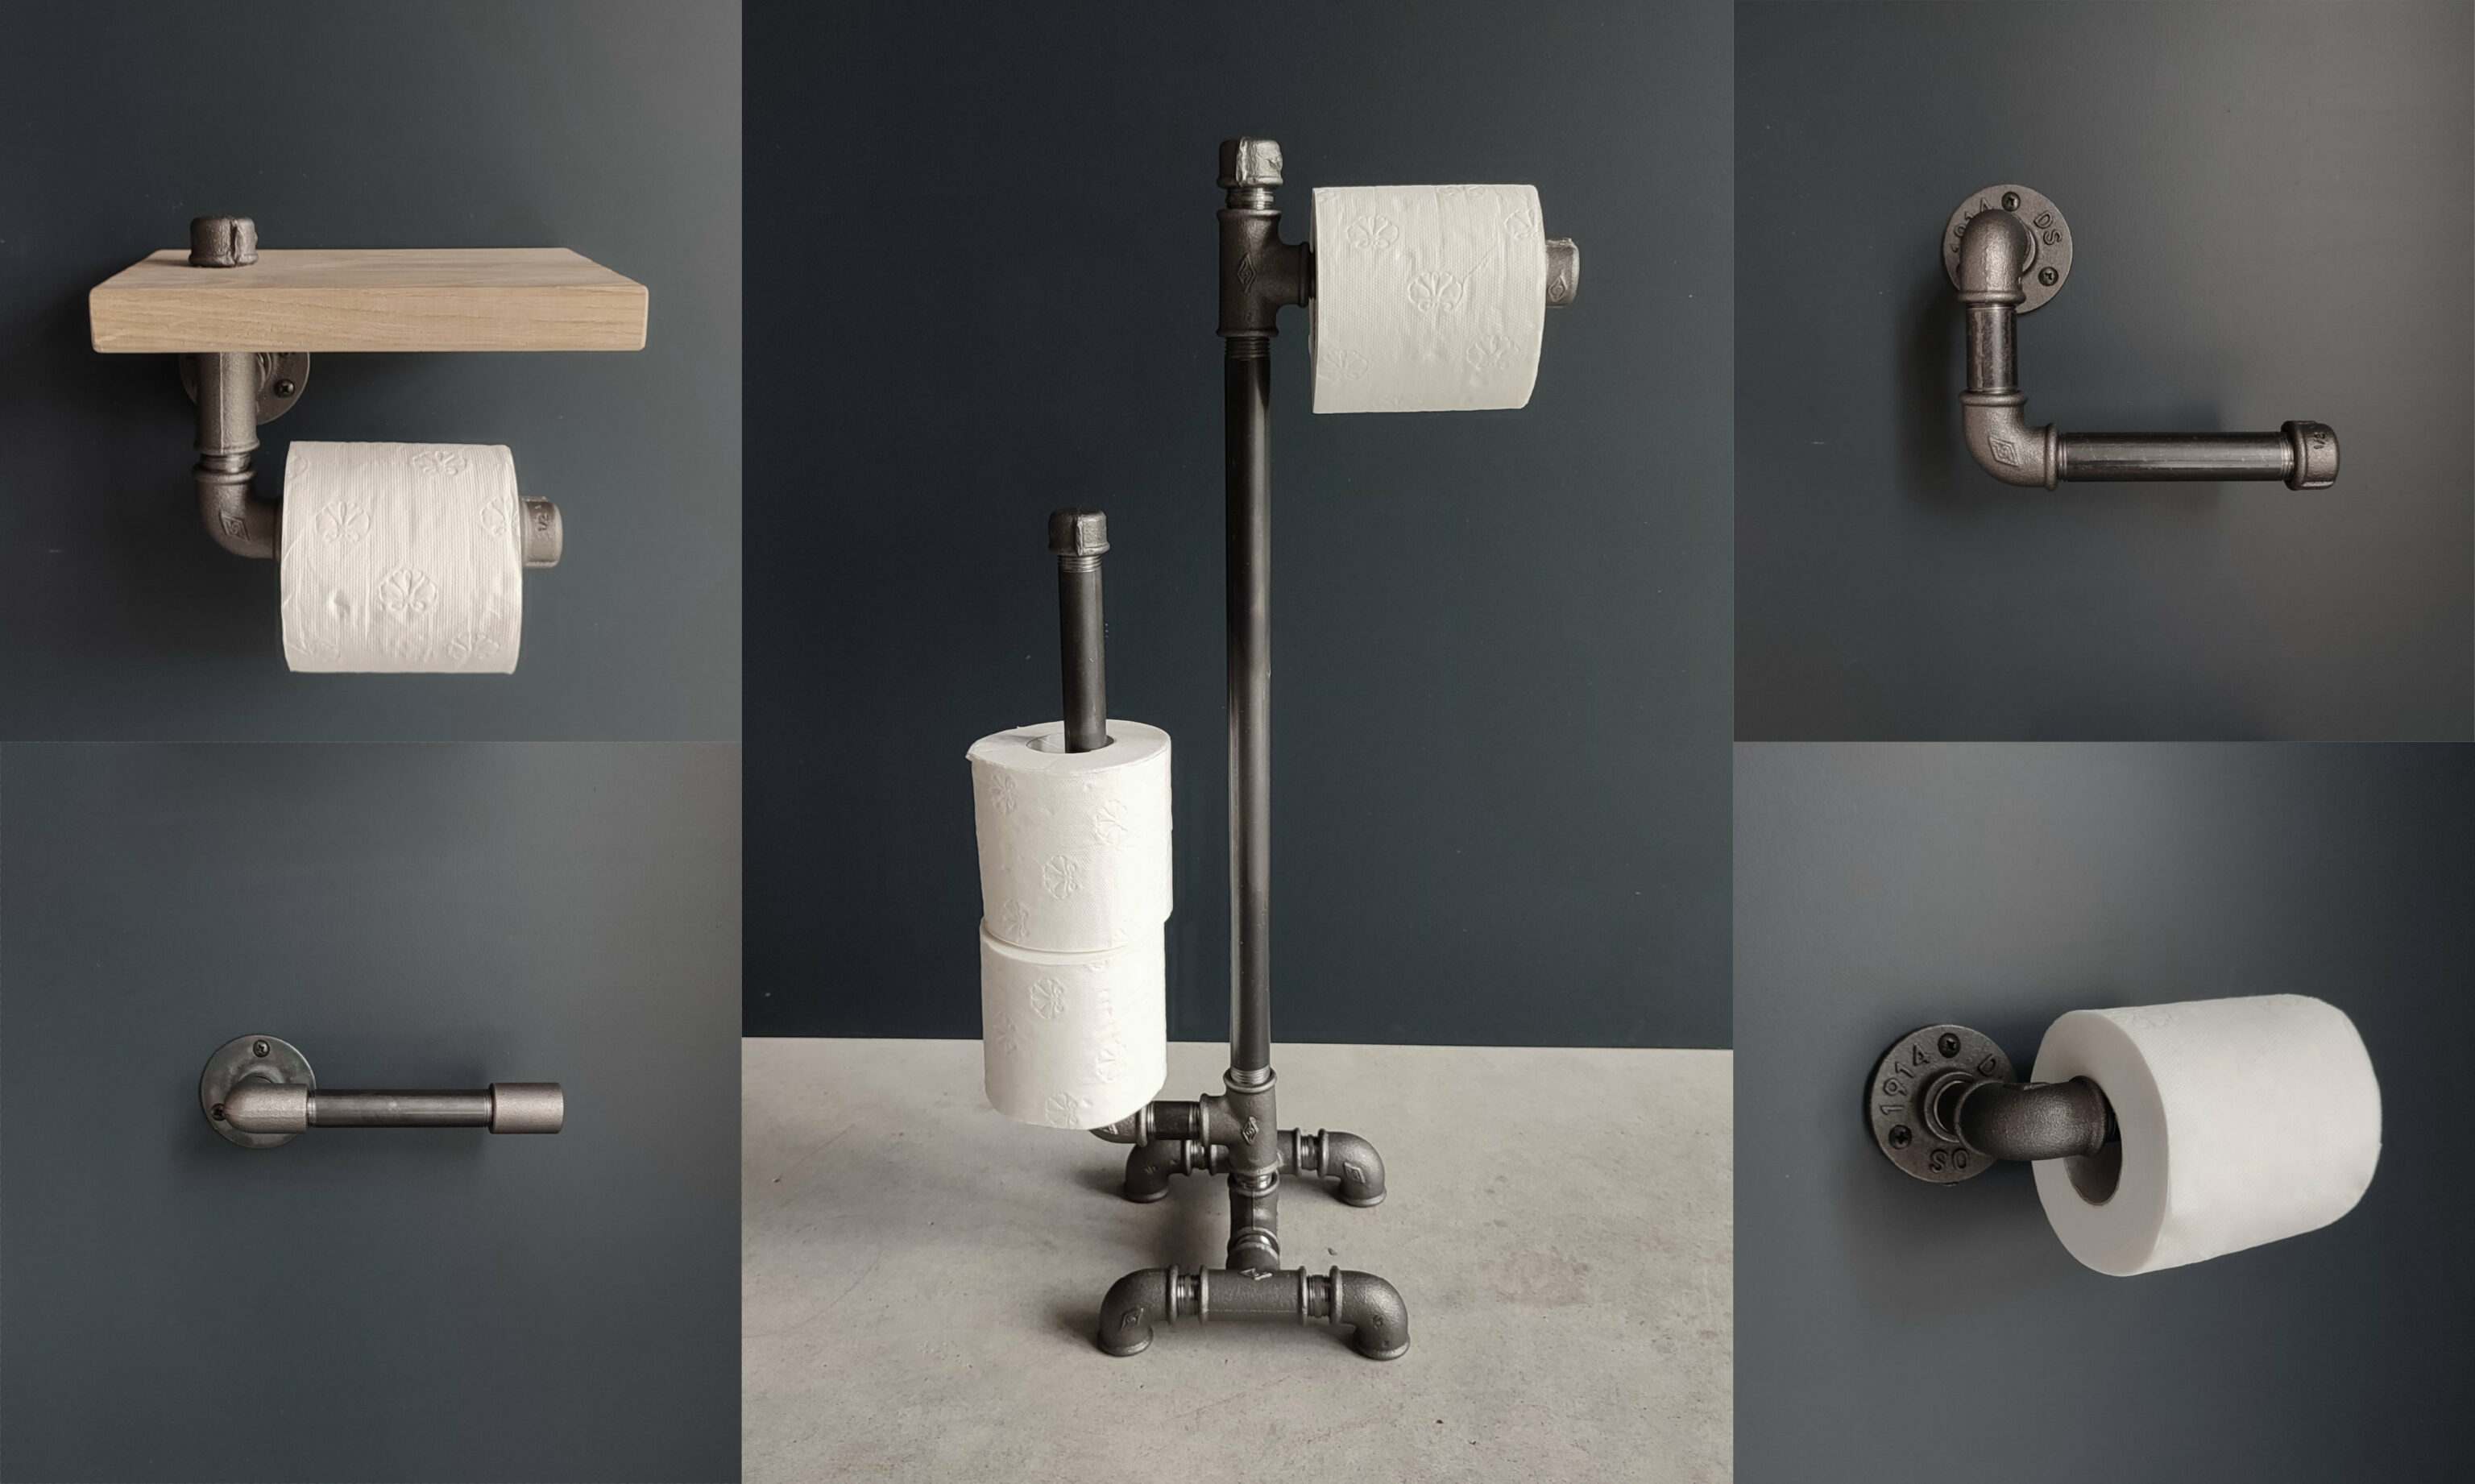 5 wc-papierhouders in industriële stijl om te maken voor uw kleine sanitair inrichtingshoekje - Deco Blog - MC Fact